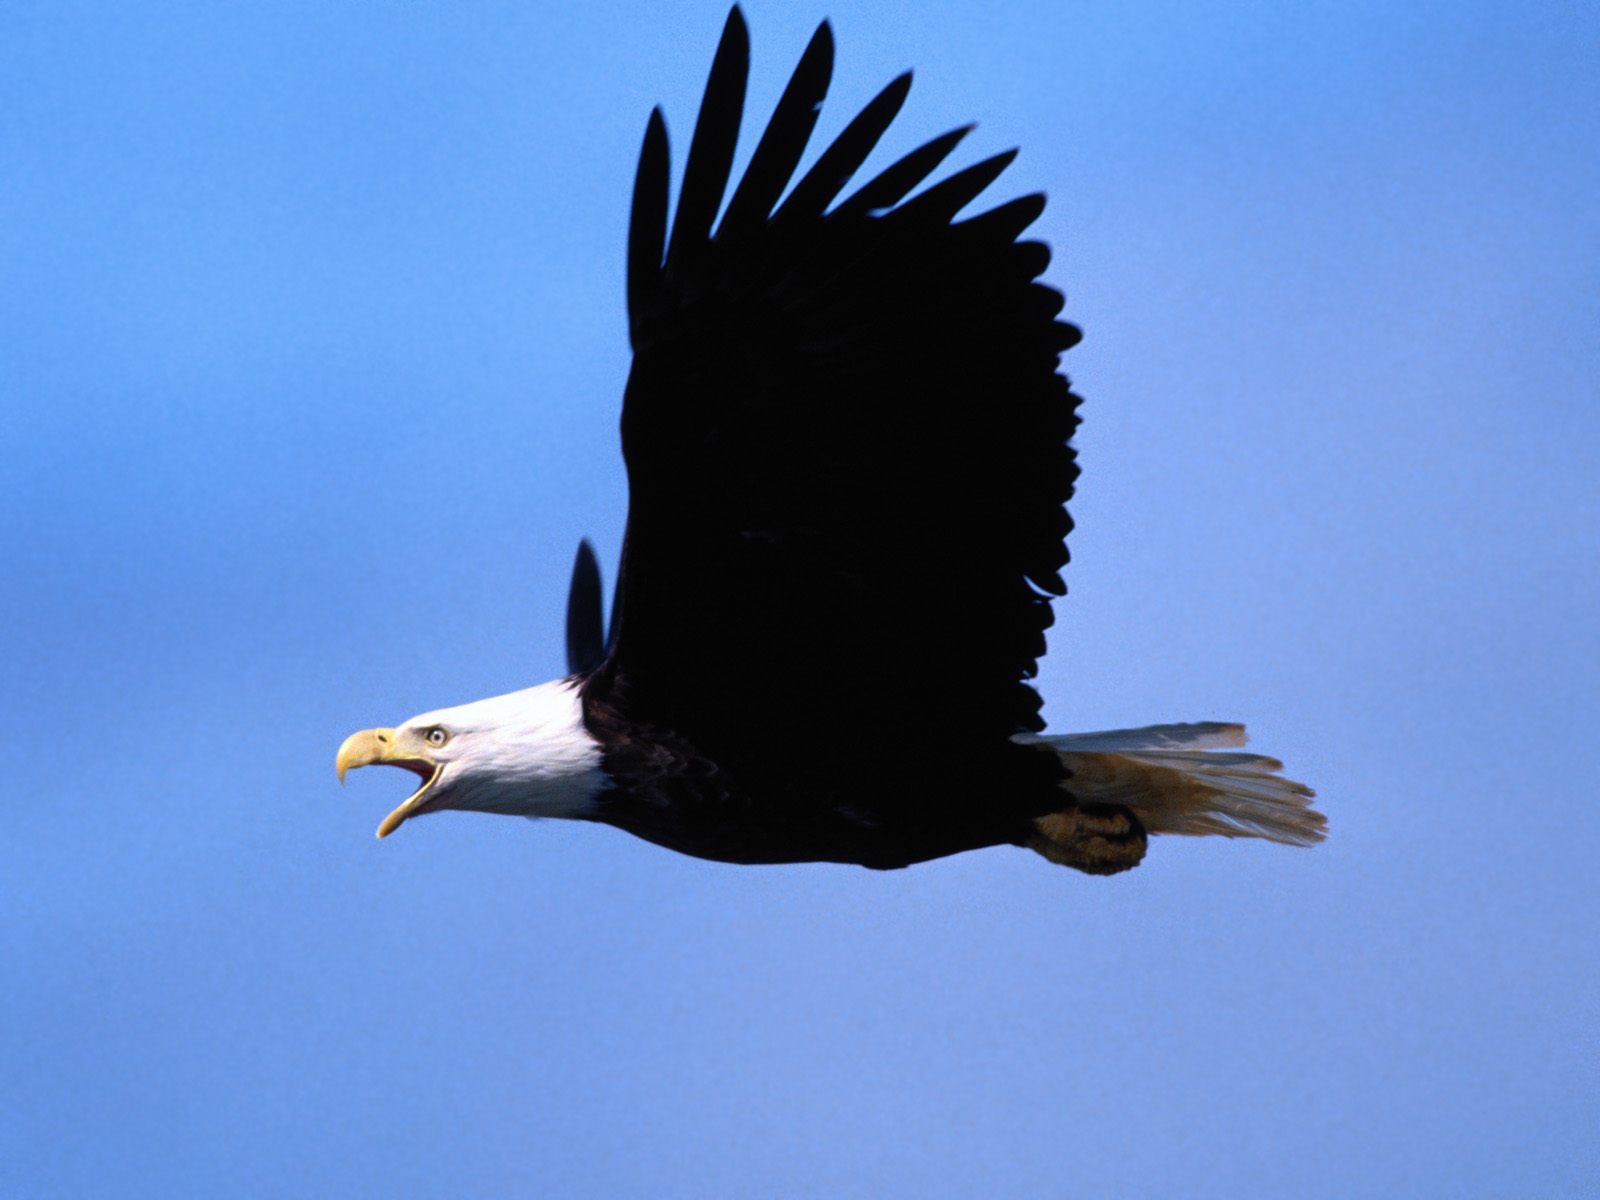 鹰 鸟 动物 - Pixabay上的免费照片 - Pixabay